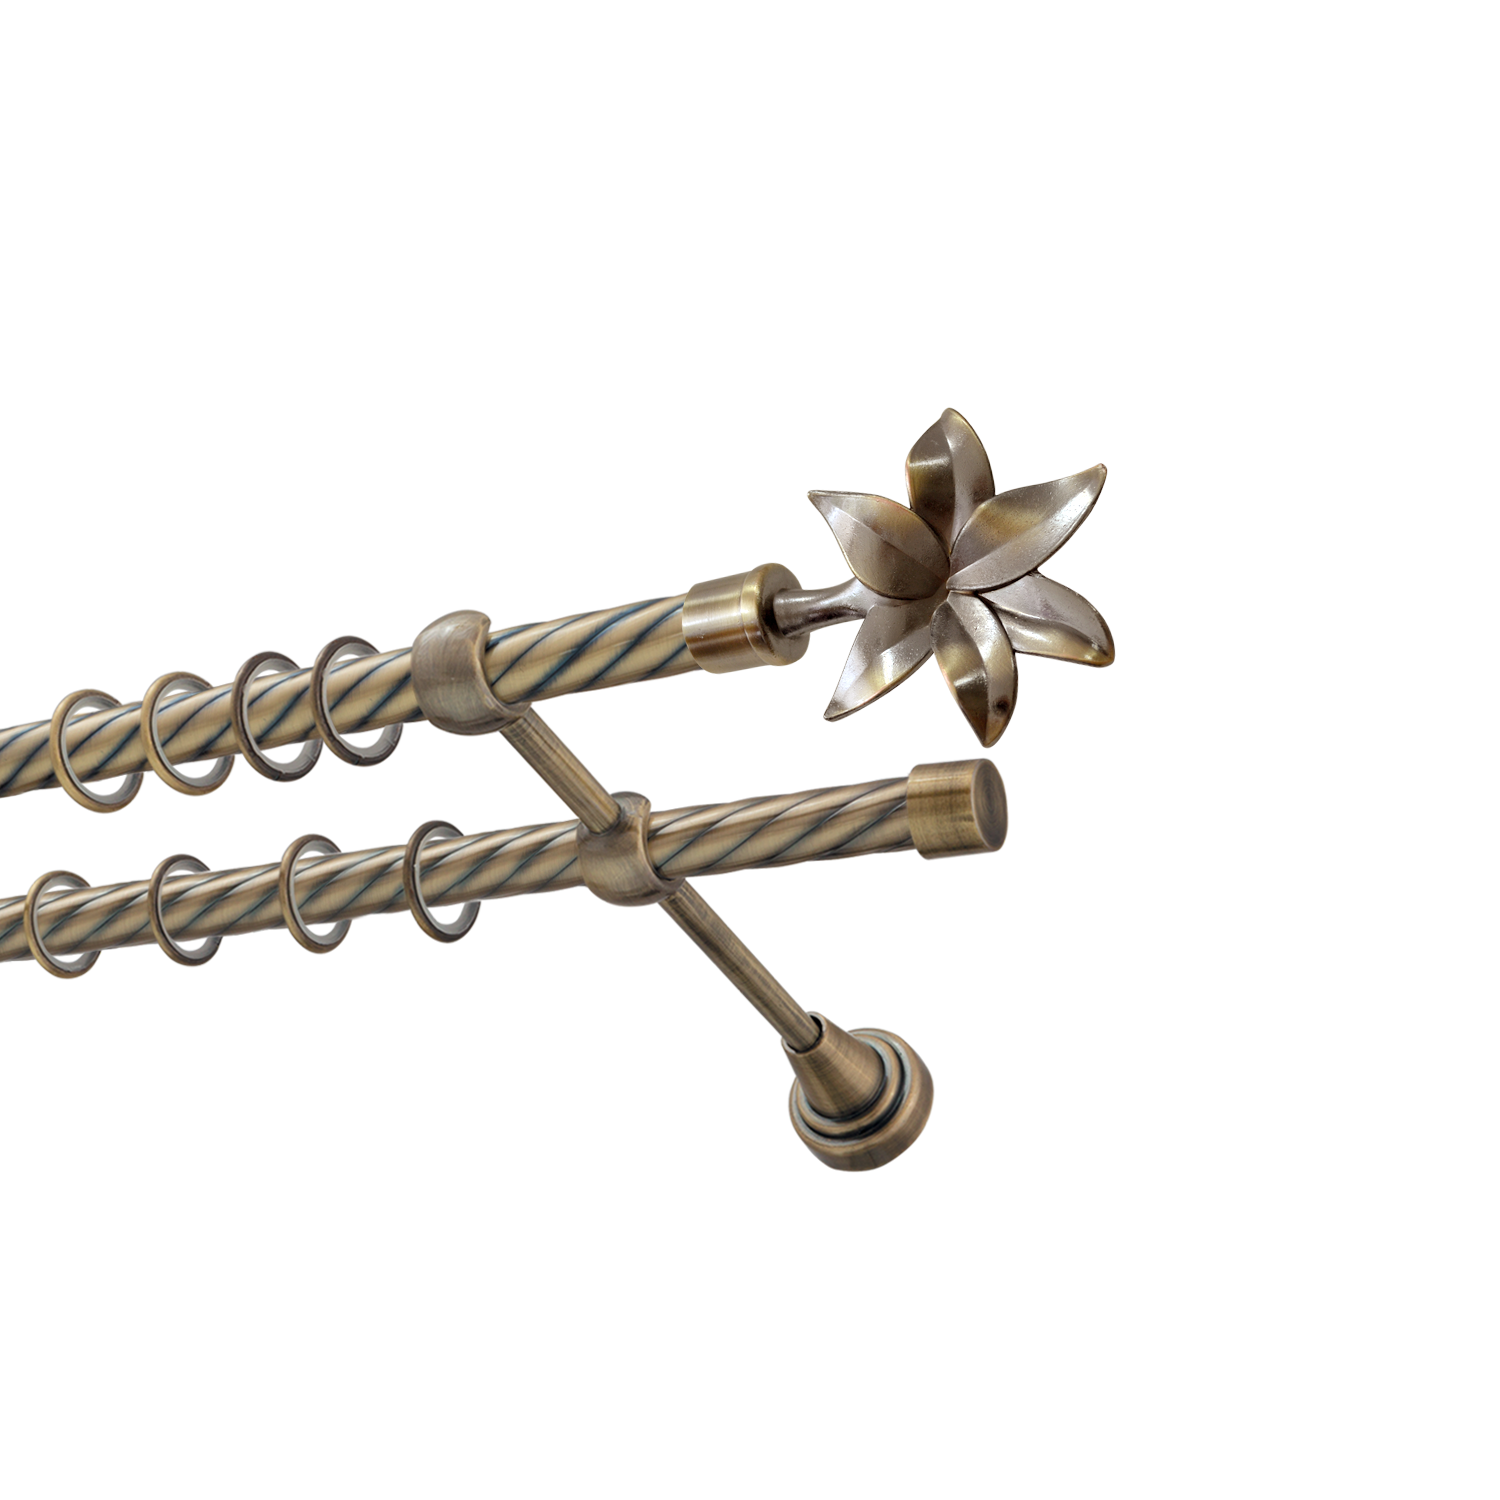 Металлический карниз для штор Магнолия, двухрядный 16/16 мм, бронза, витая штанга, длина 300 см - фото Wikidecor.ru